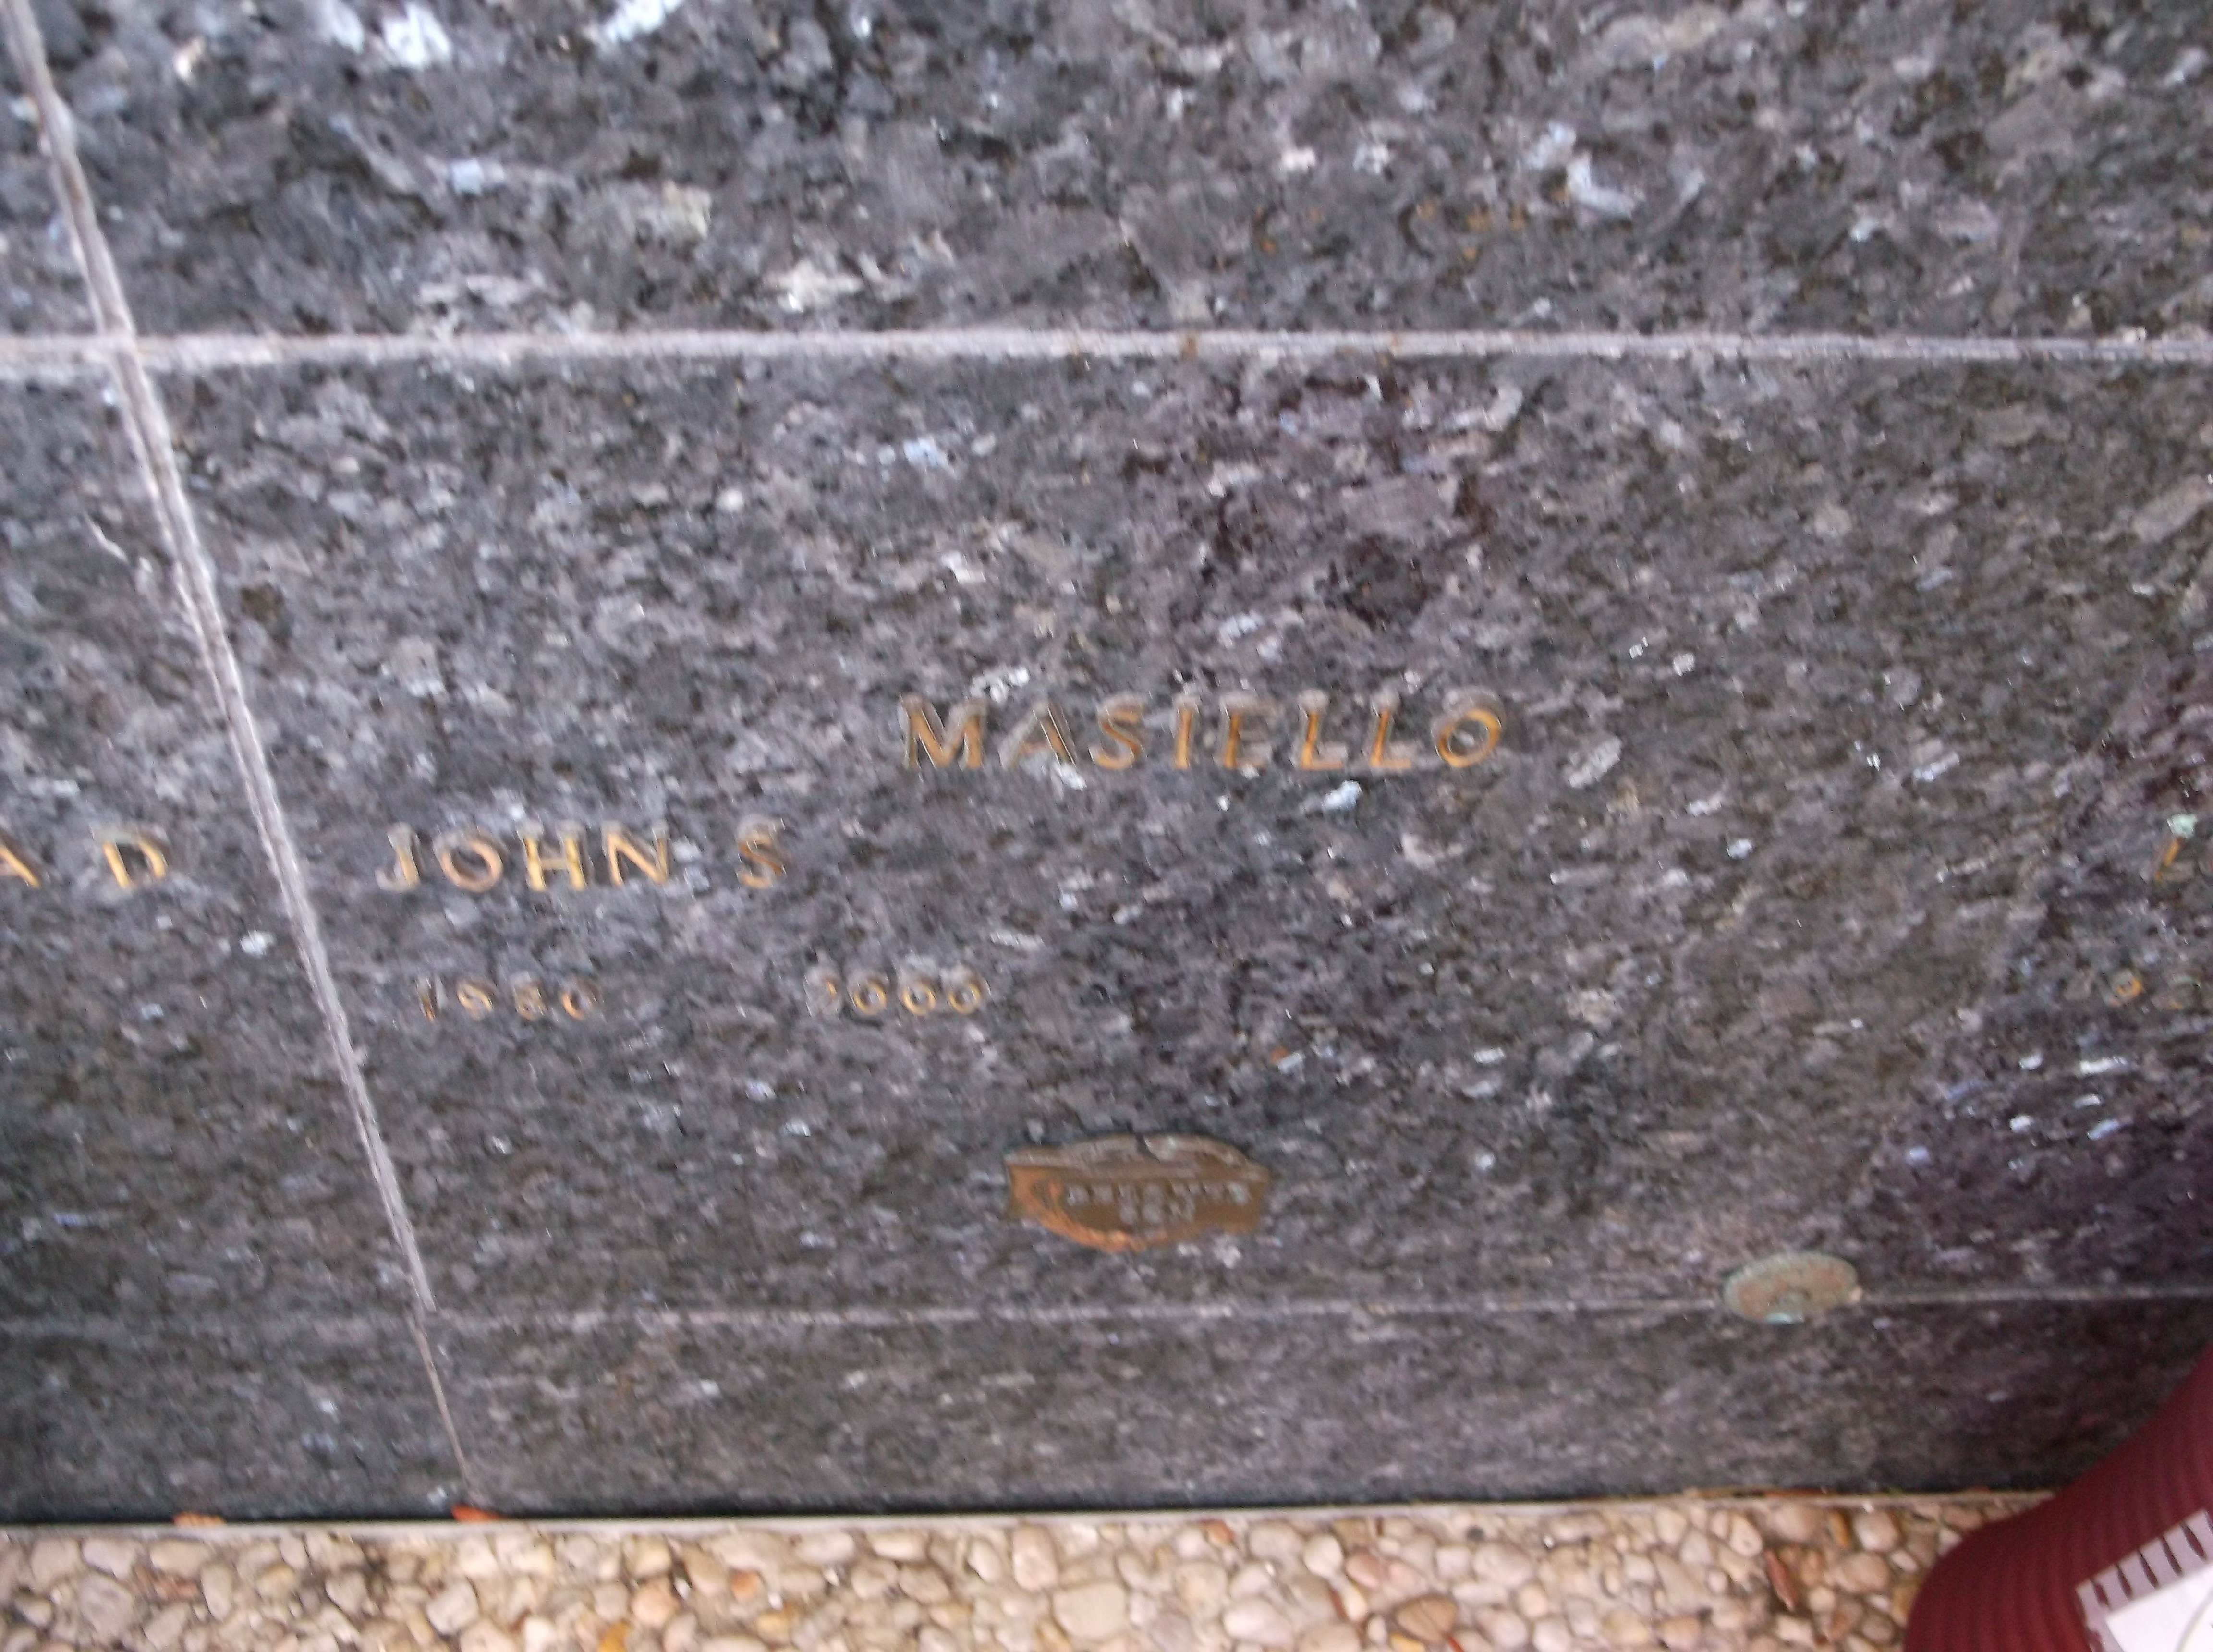 John S Masiello